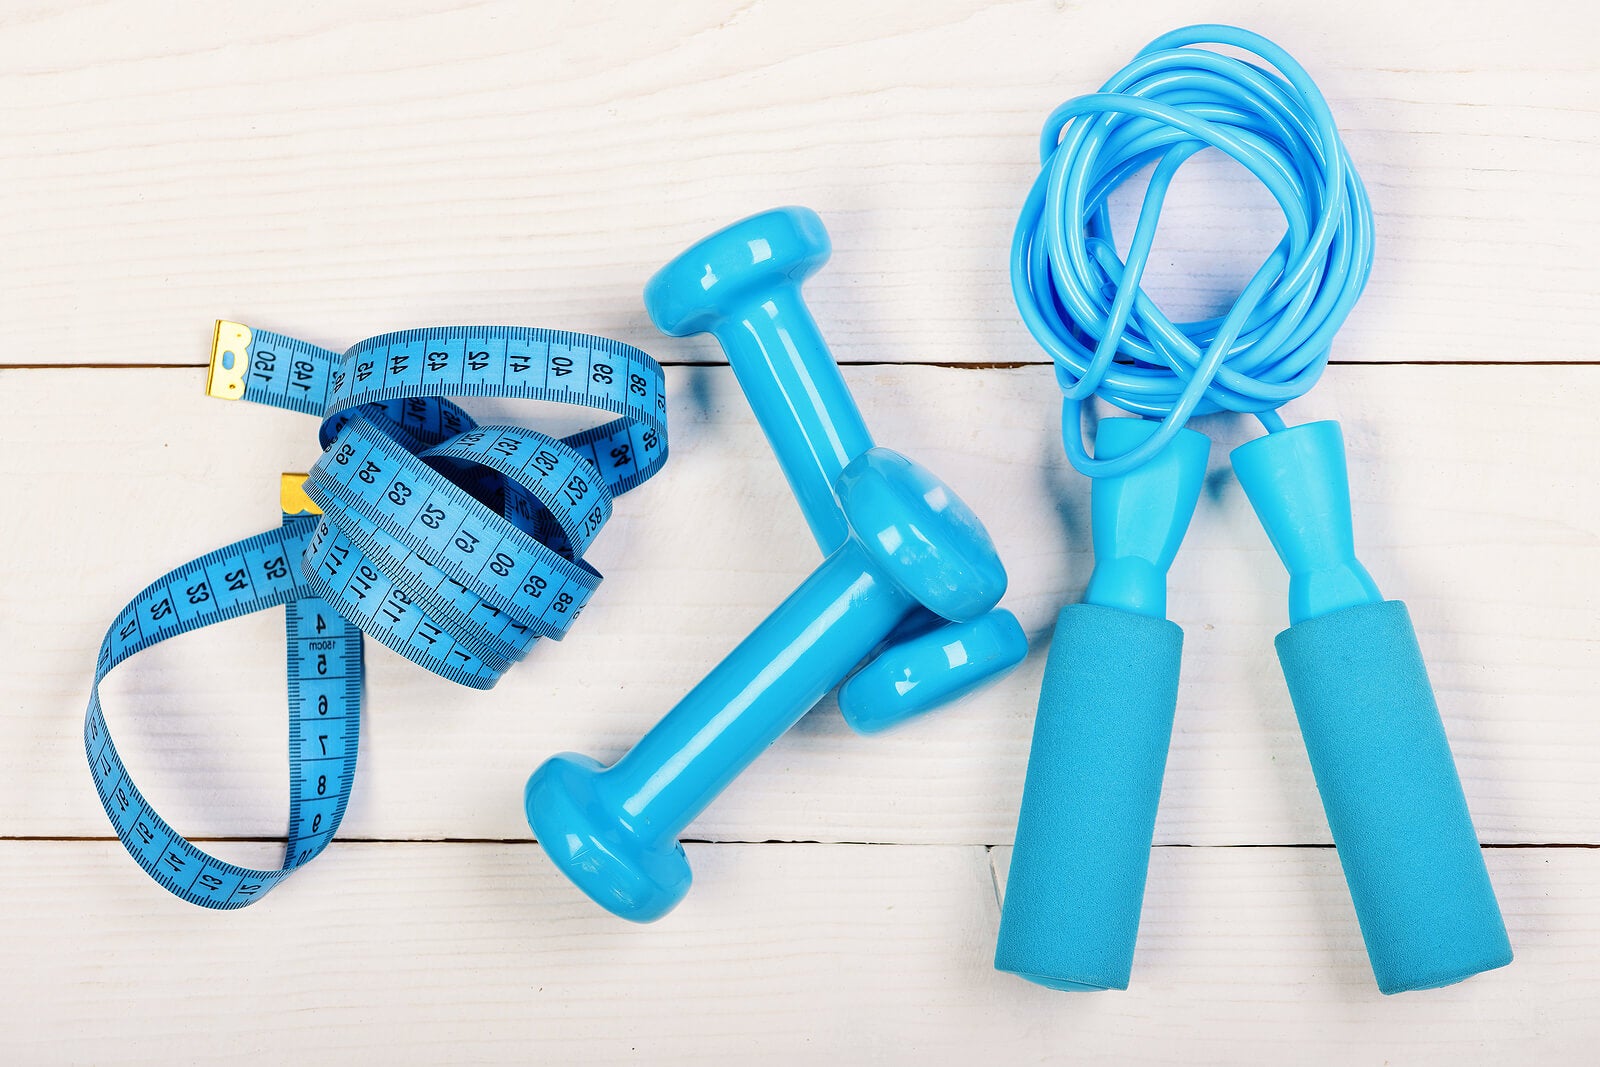 6 beneficios de saltar la cuerda, un ejercicio muy completo